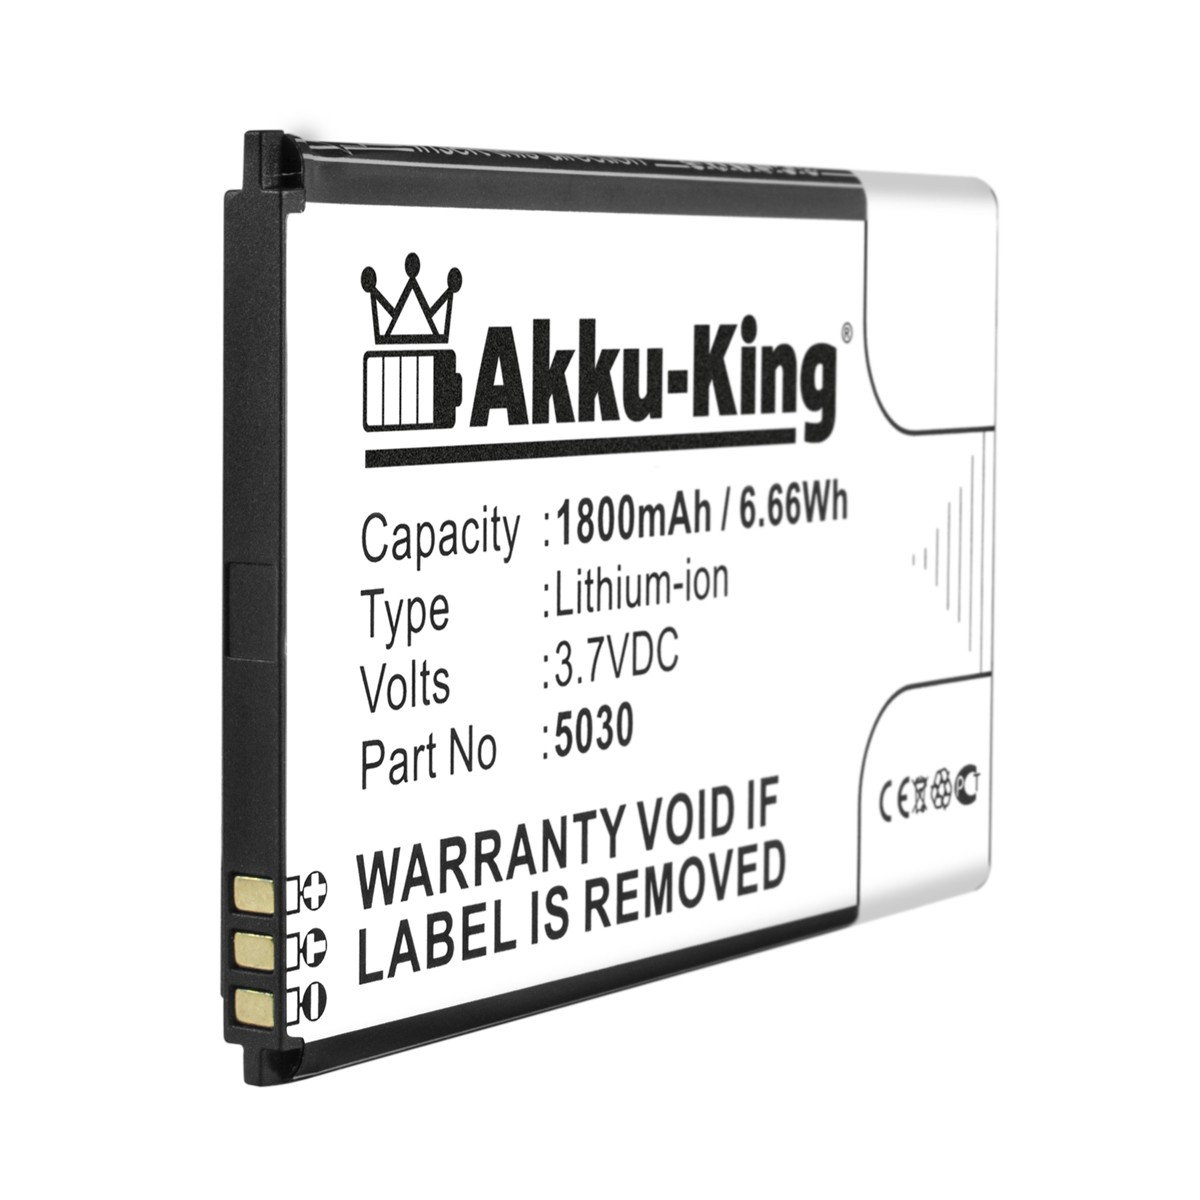 Akku Volt, kompatibel mit 5030 Wiko 1800mAh Handy-Akku, AKKU-KING Li-Ion 3.7